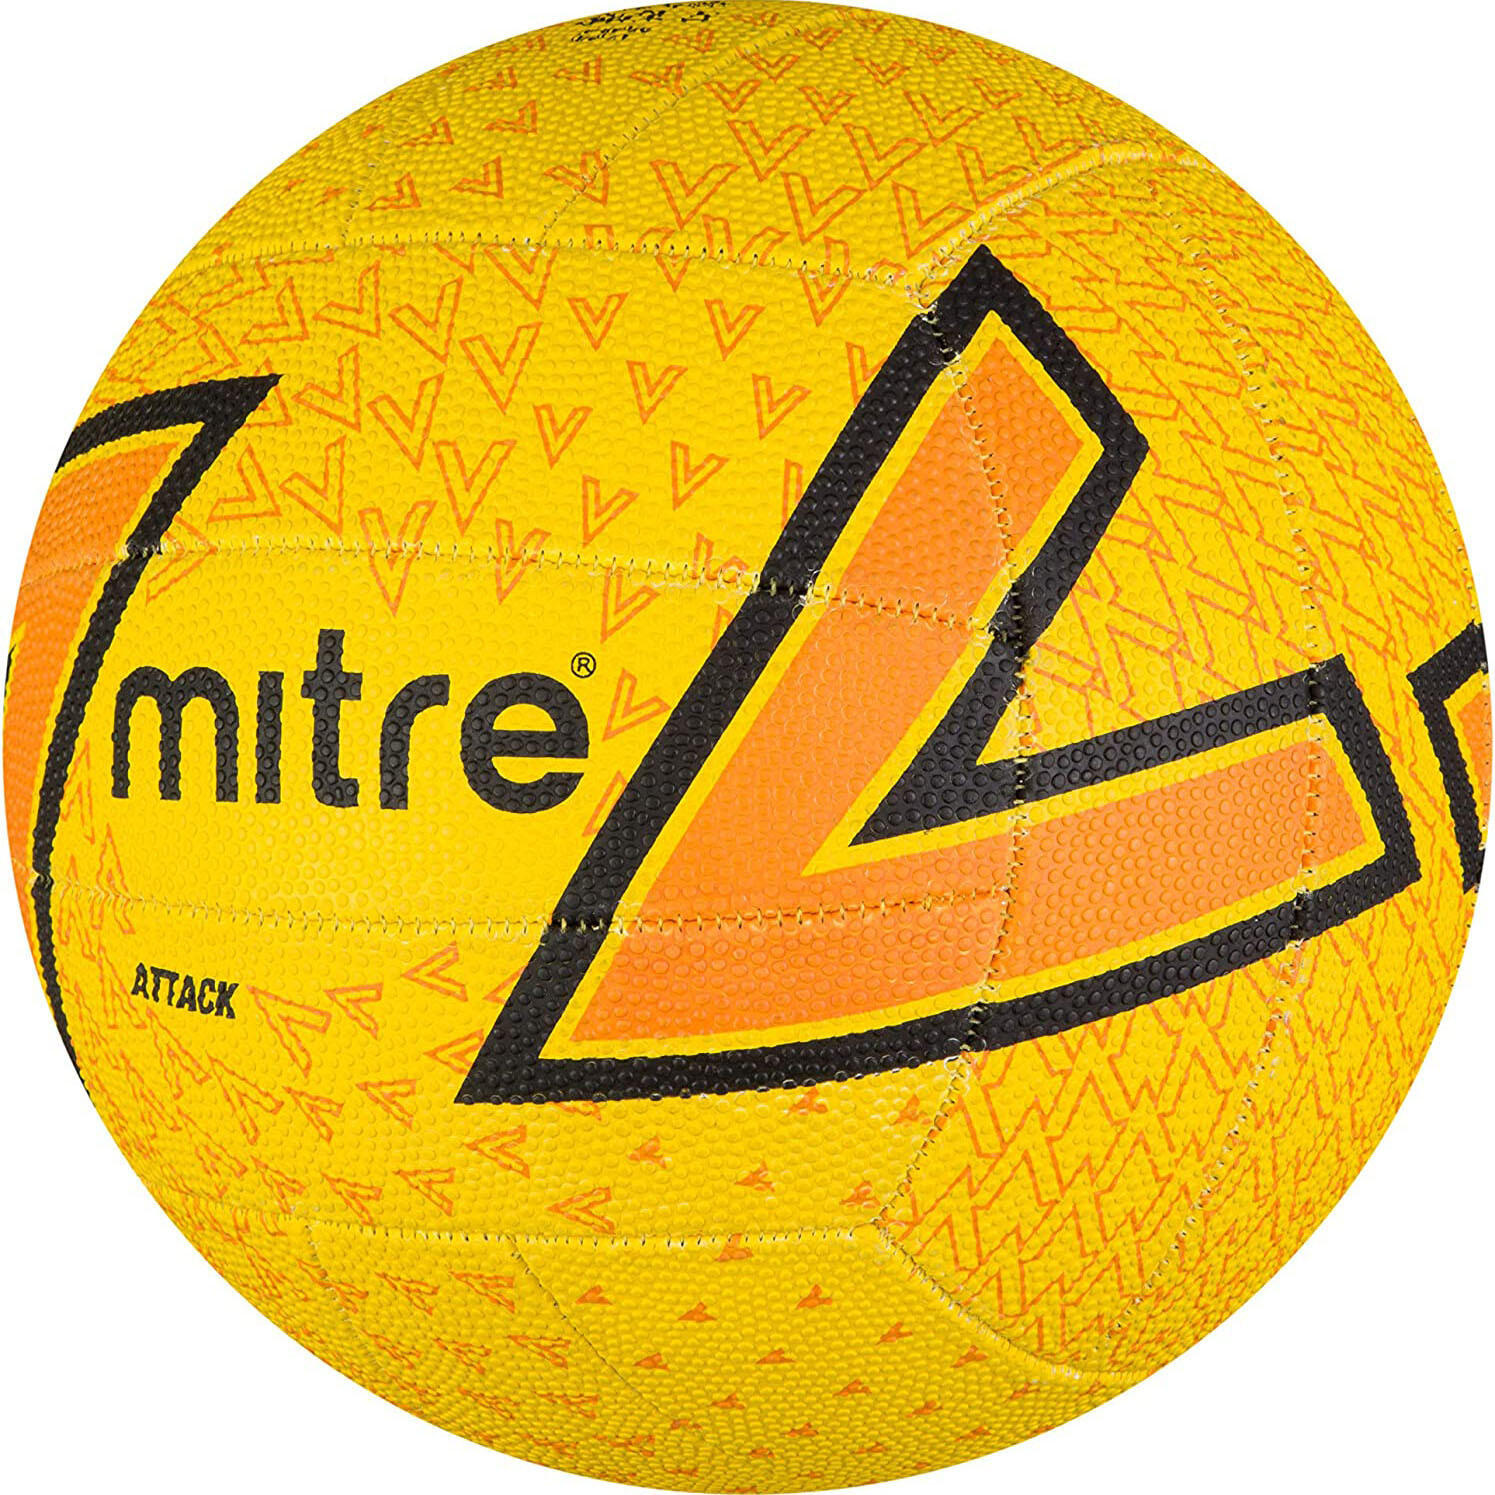 Attack Netball (Yellow/Black/Orange) 4/4